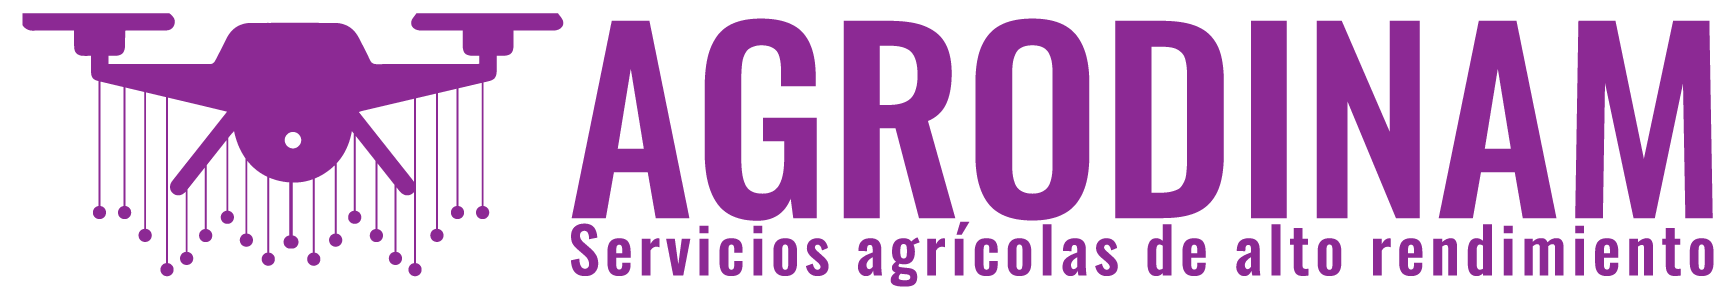 Logotipo para empresa de agricultura que vende drones agricolas